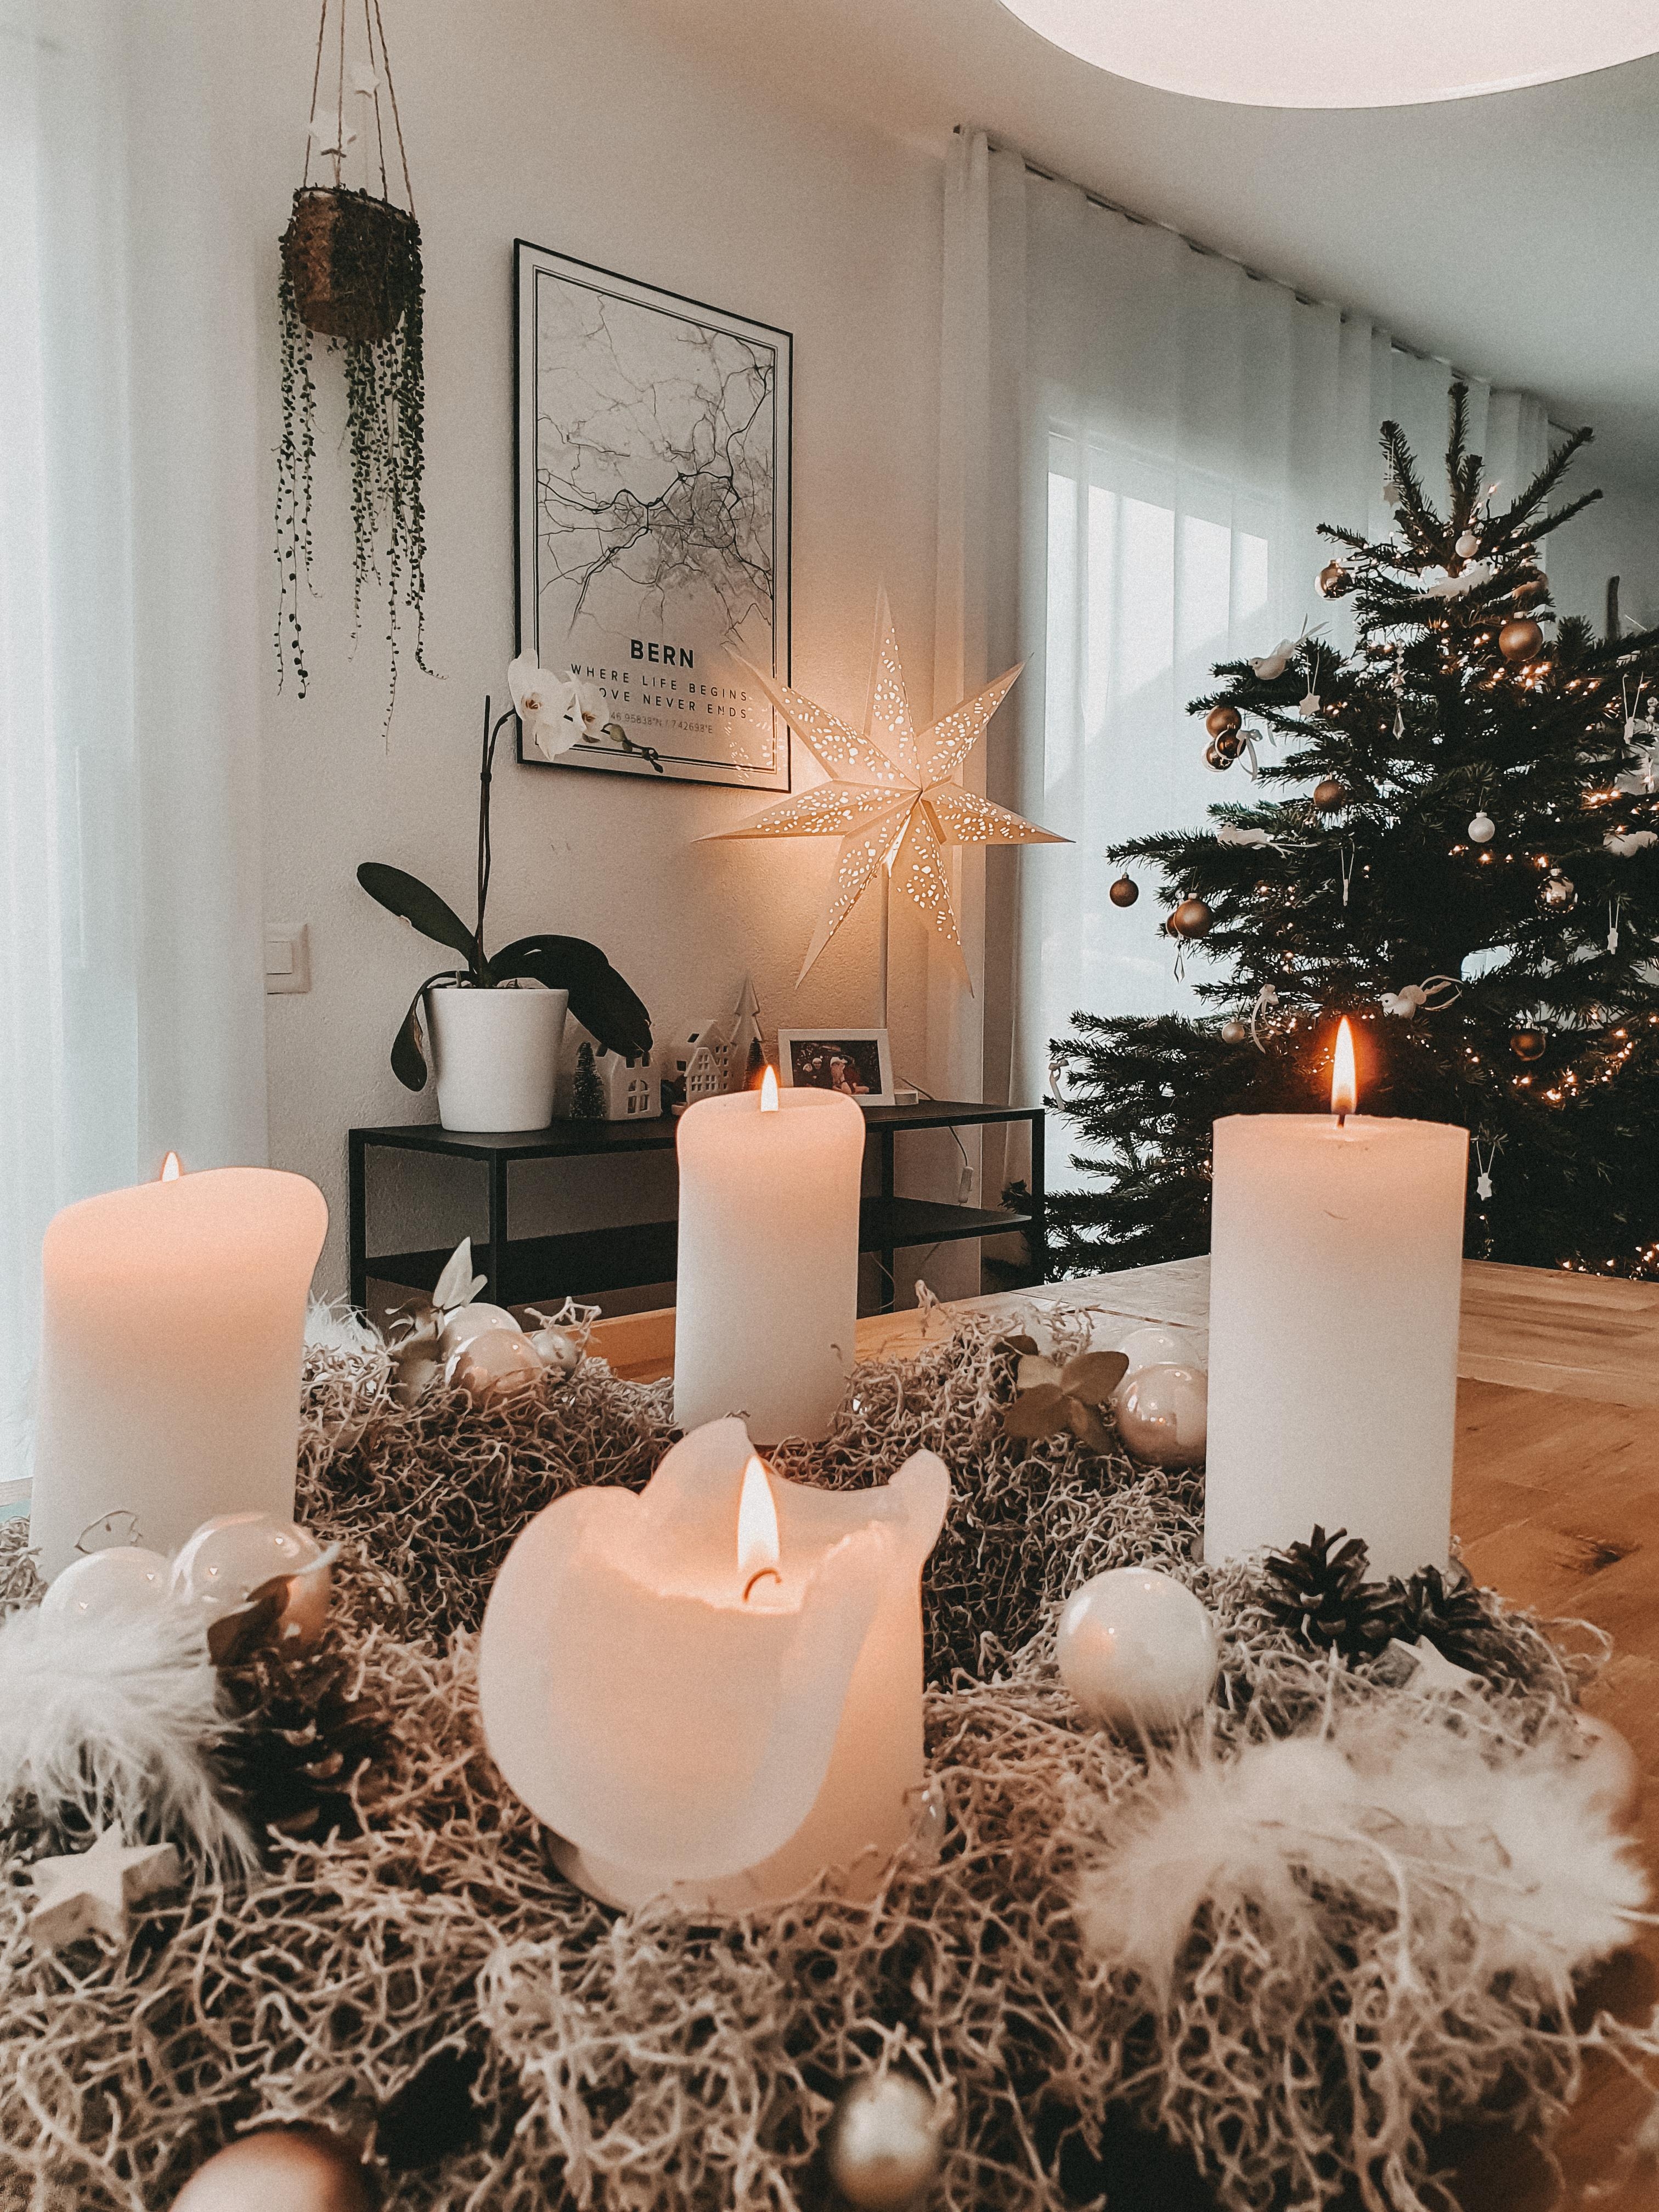 Wünsche euch allen wundervolle Weihnachten 🌲⭐
#couchstyle #weihnachten #adventszeit